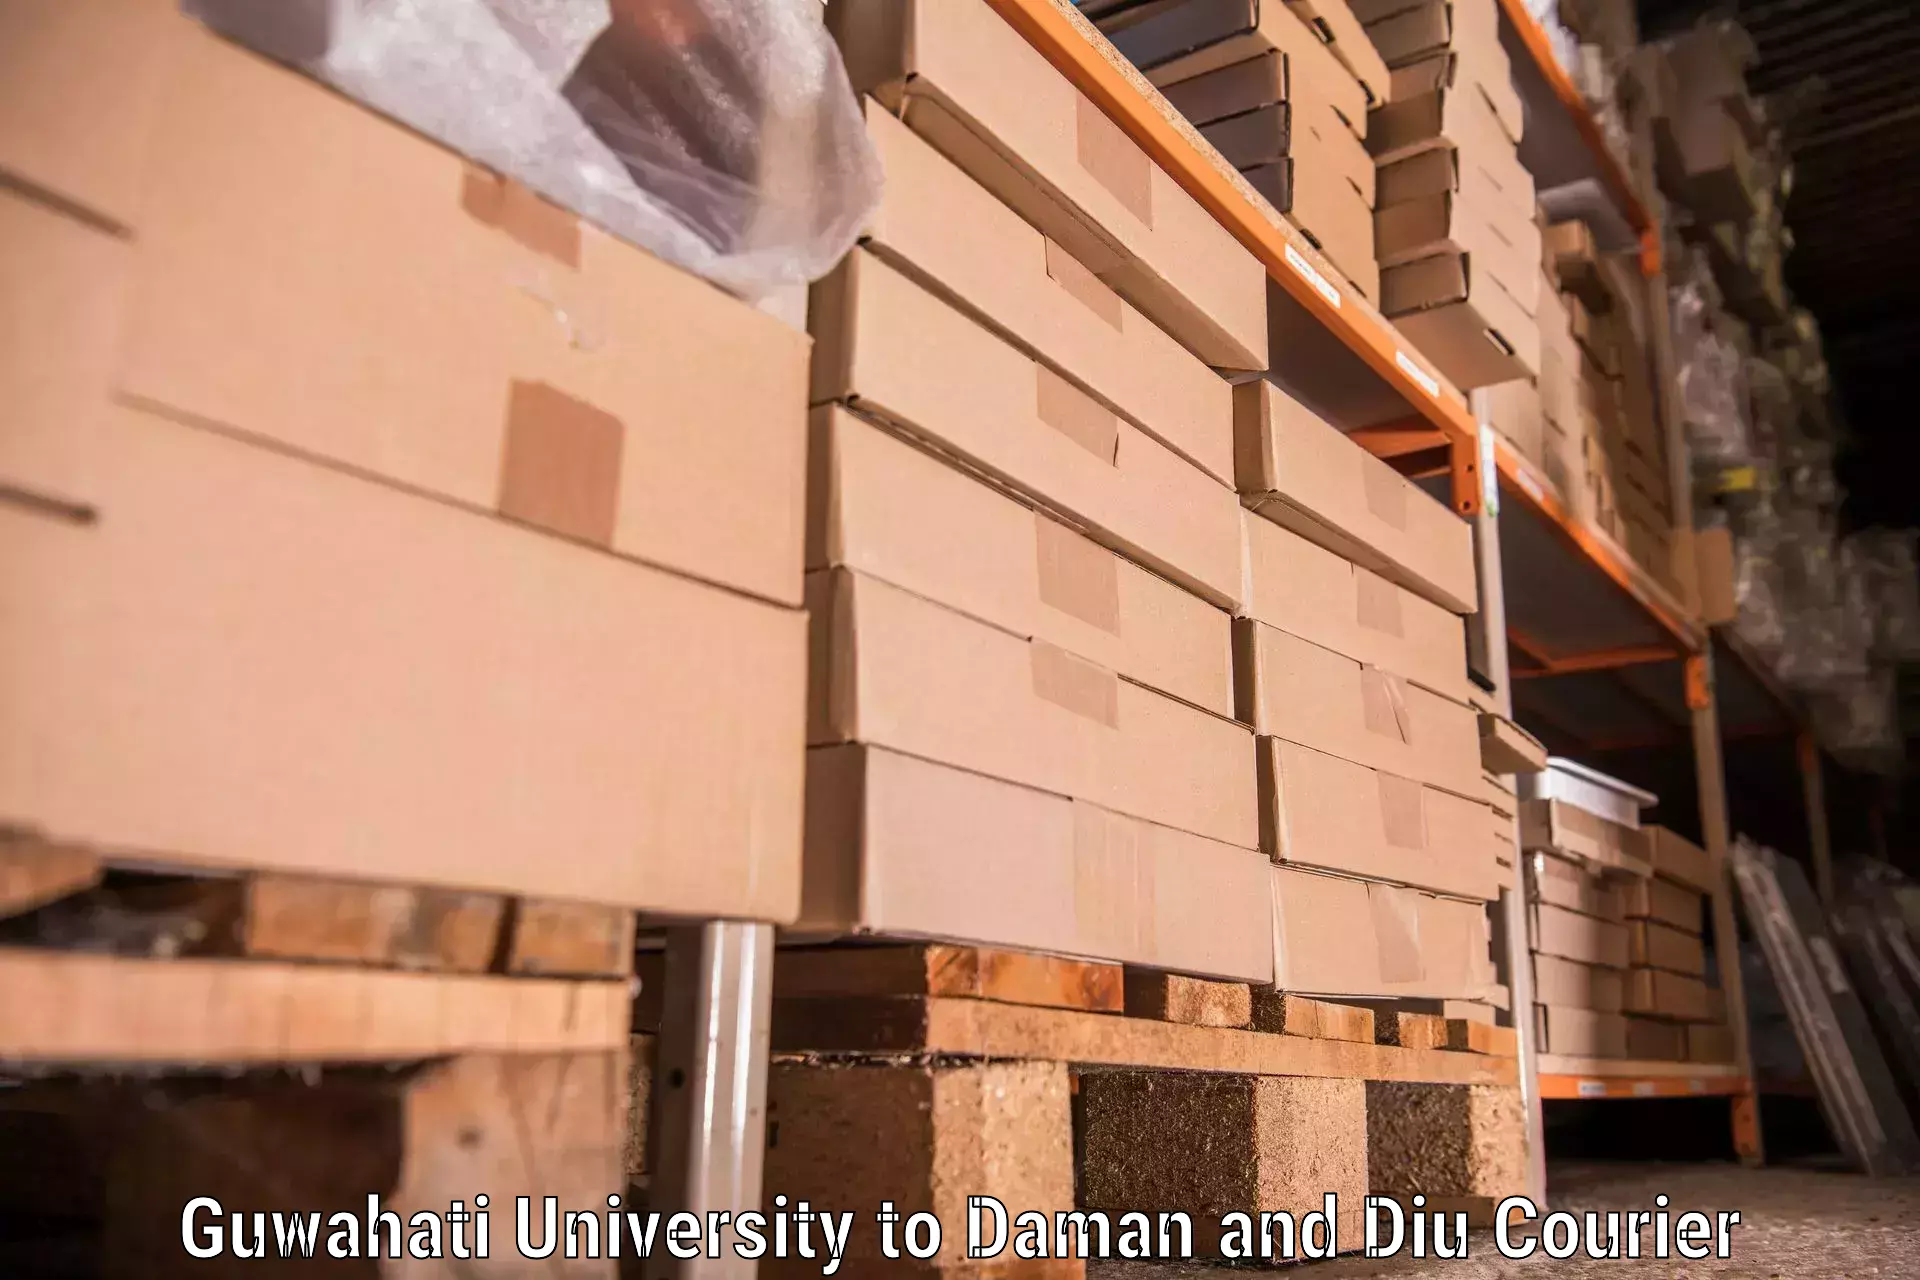 Furniture transport services Guwahati University to Daman